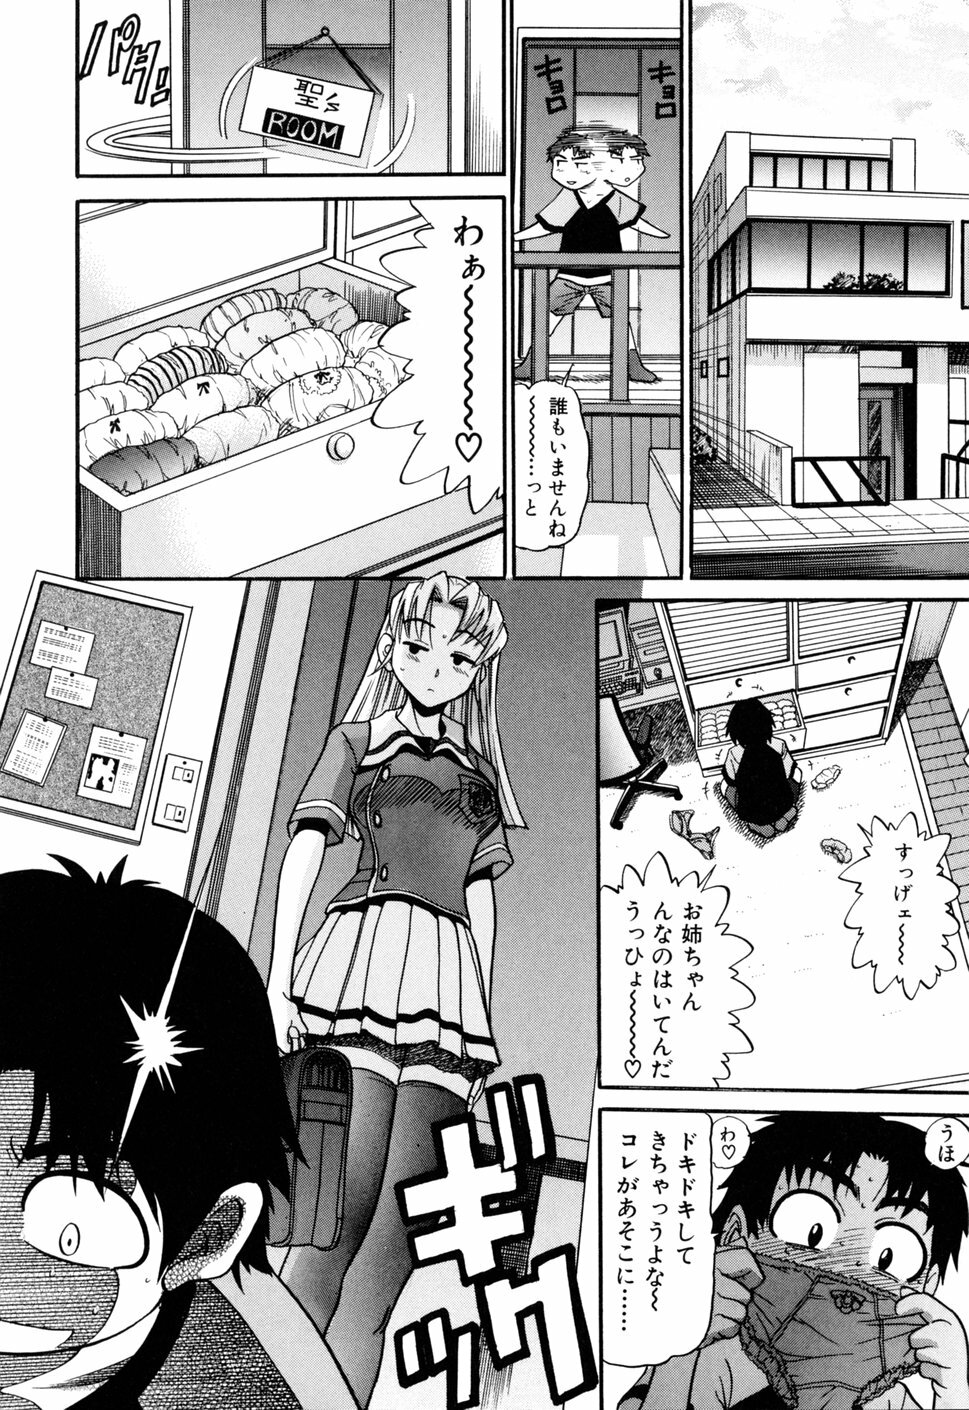 [DISTANCE] Ochiru Tenshi Vol. 1 page 14 full